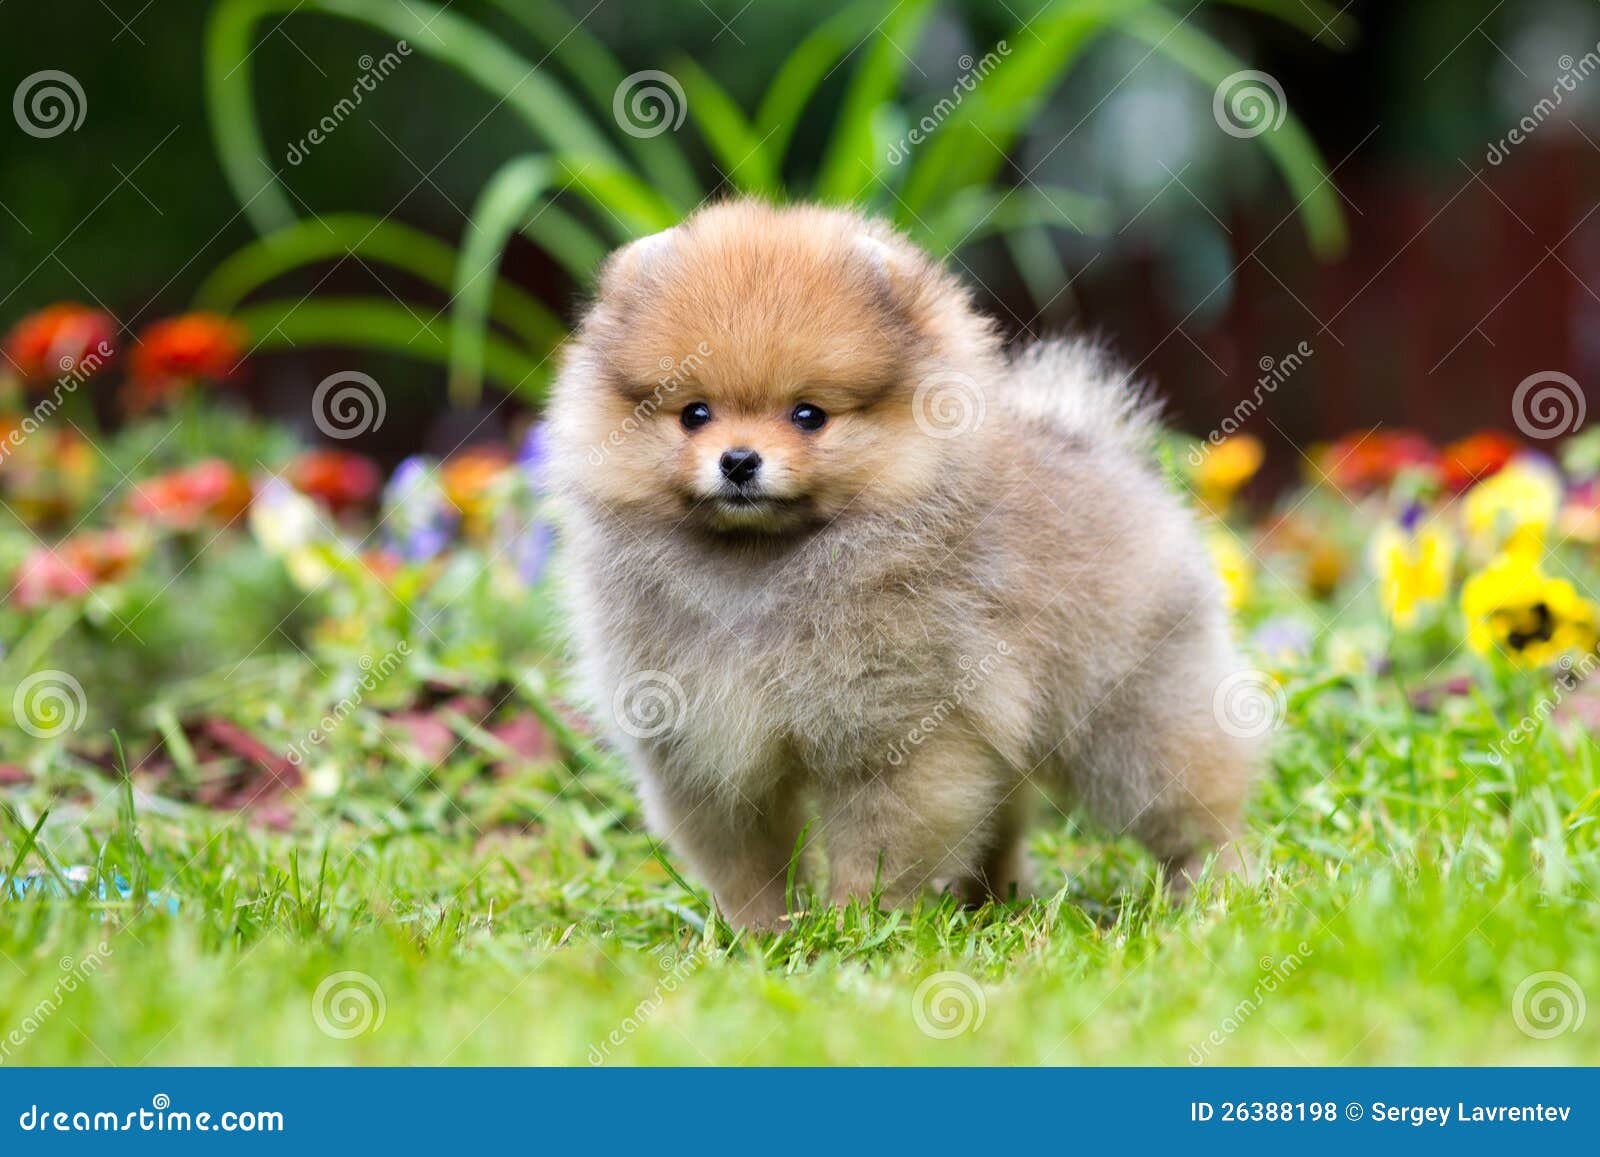 little fluffy pomeranian puppy